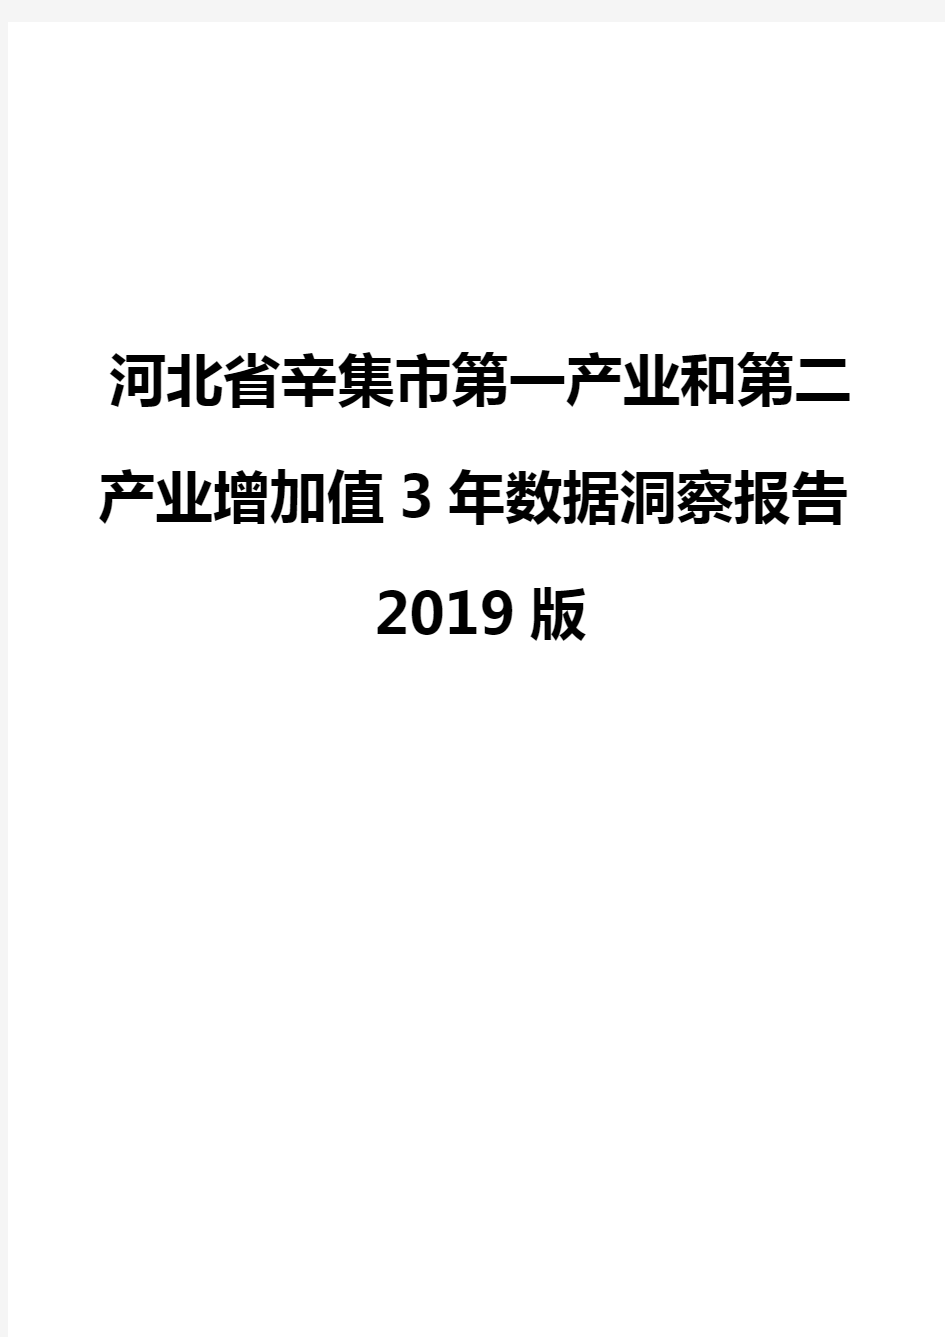 河北省辛集市第一产业和第二产业增加值3年数据洞察报告2019版